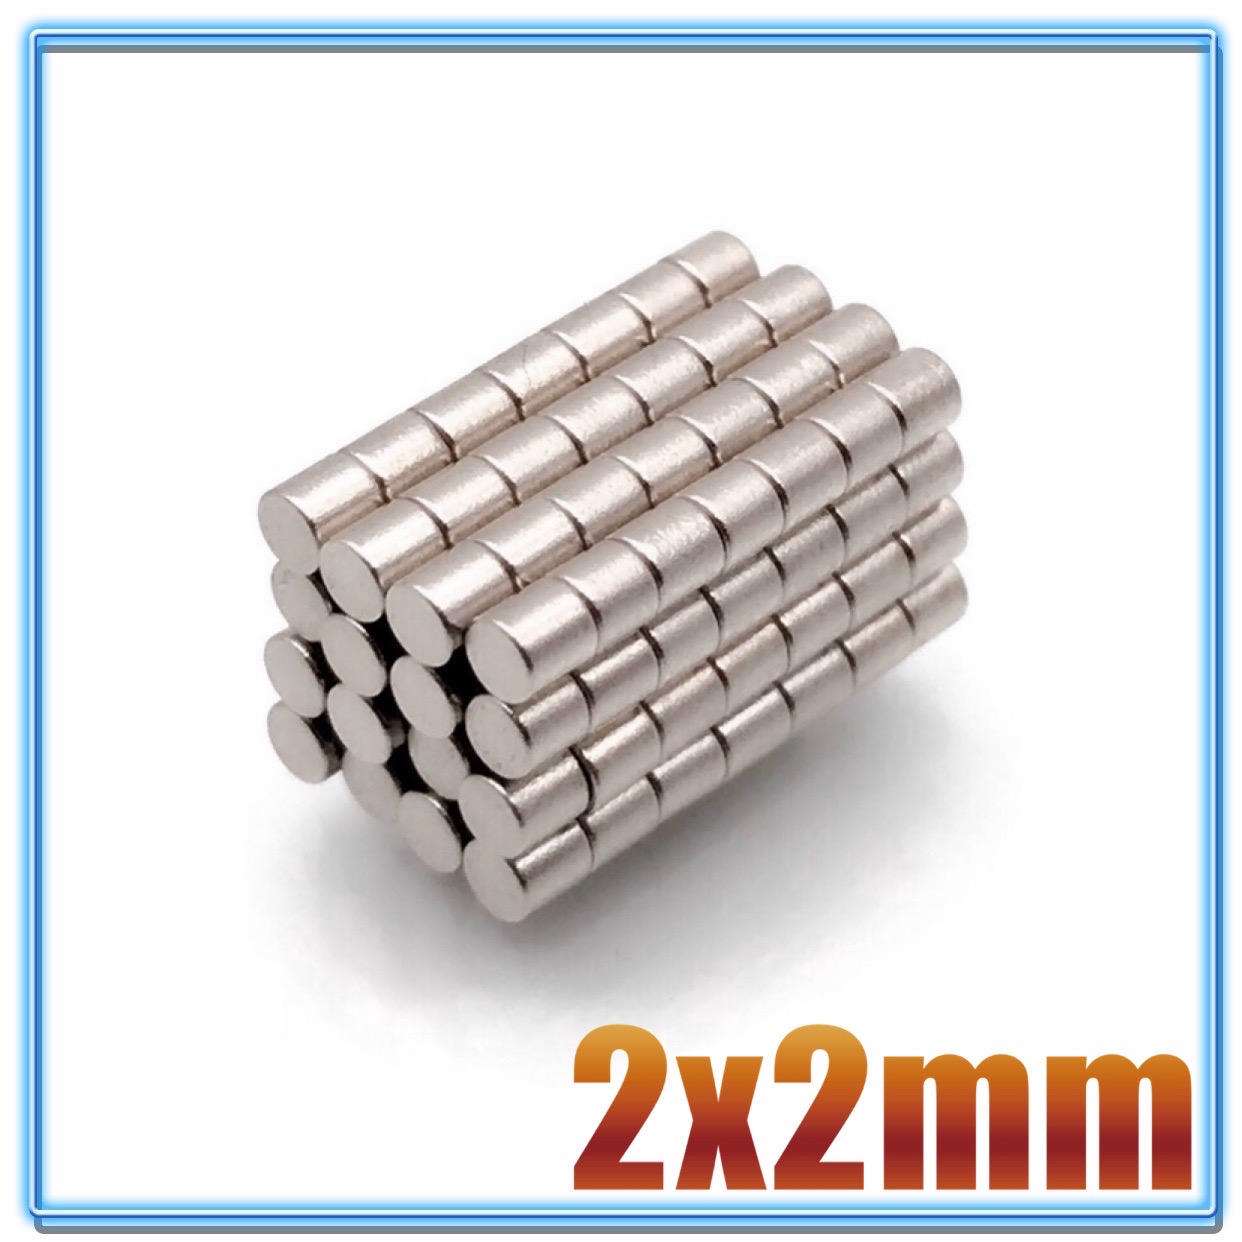 100 ~ 10000 Stuks 2X2Mm Kleine Magneten Ronde 2Mm * 2Mm Neodymium Magneet Disc 2X2 Permanente Ndfeb Super Sterke Krachtige Magnetische 2*2Mm